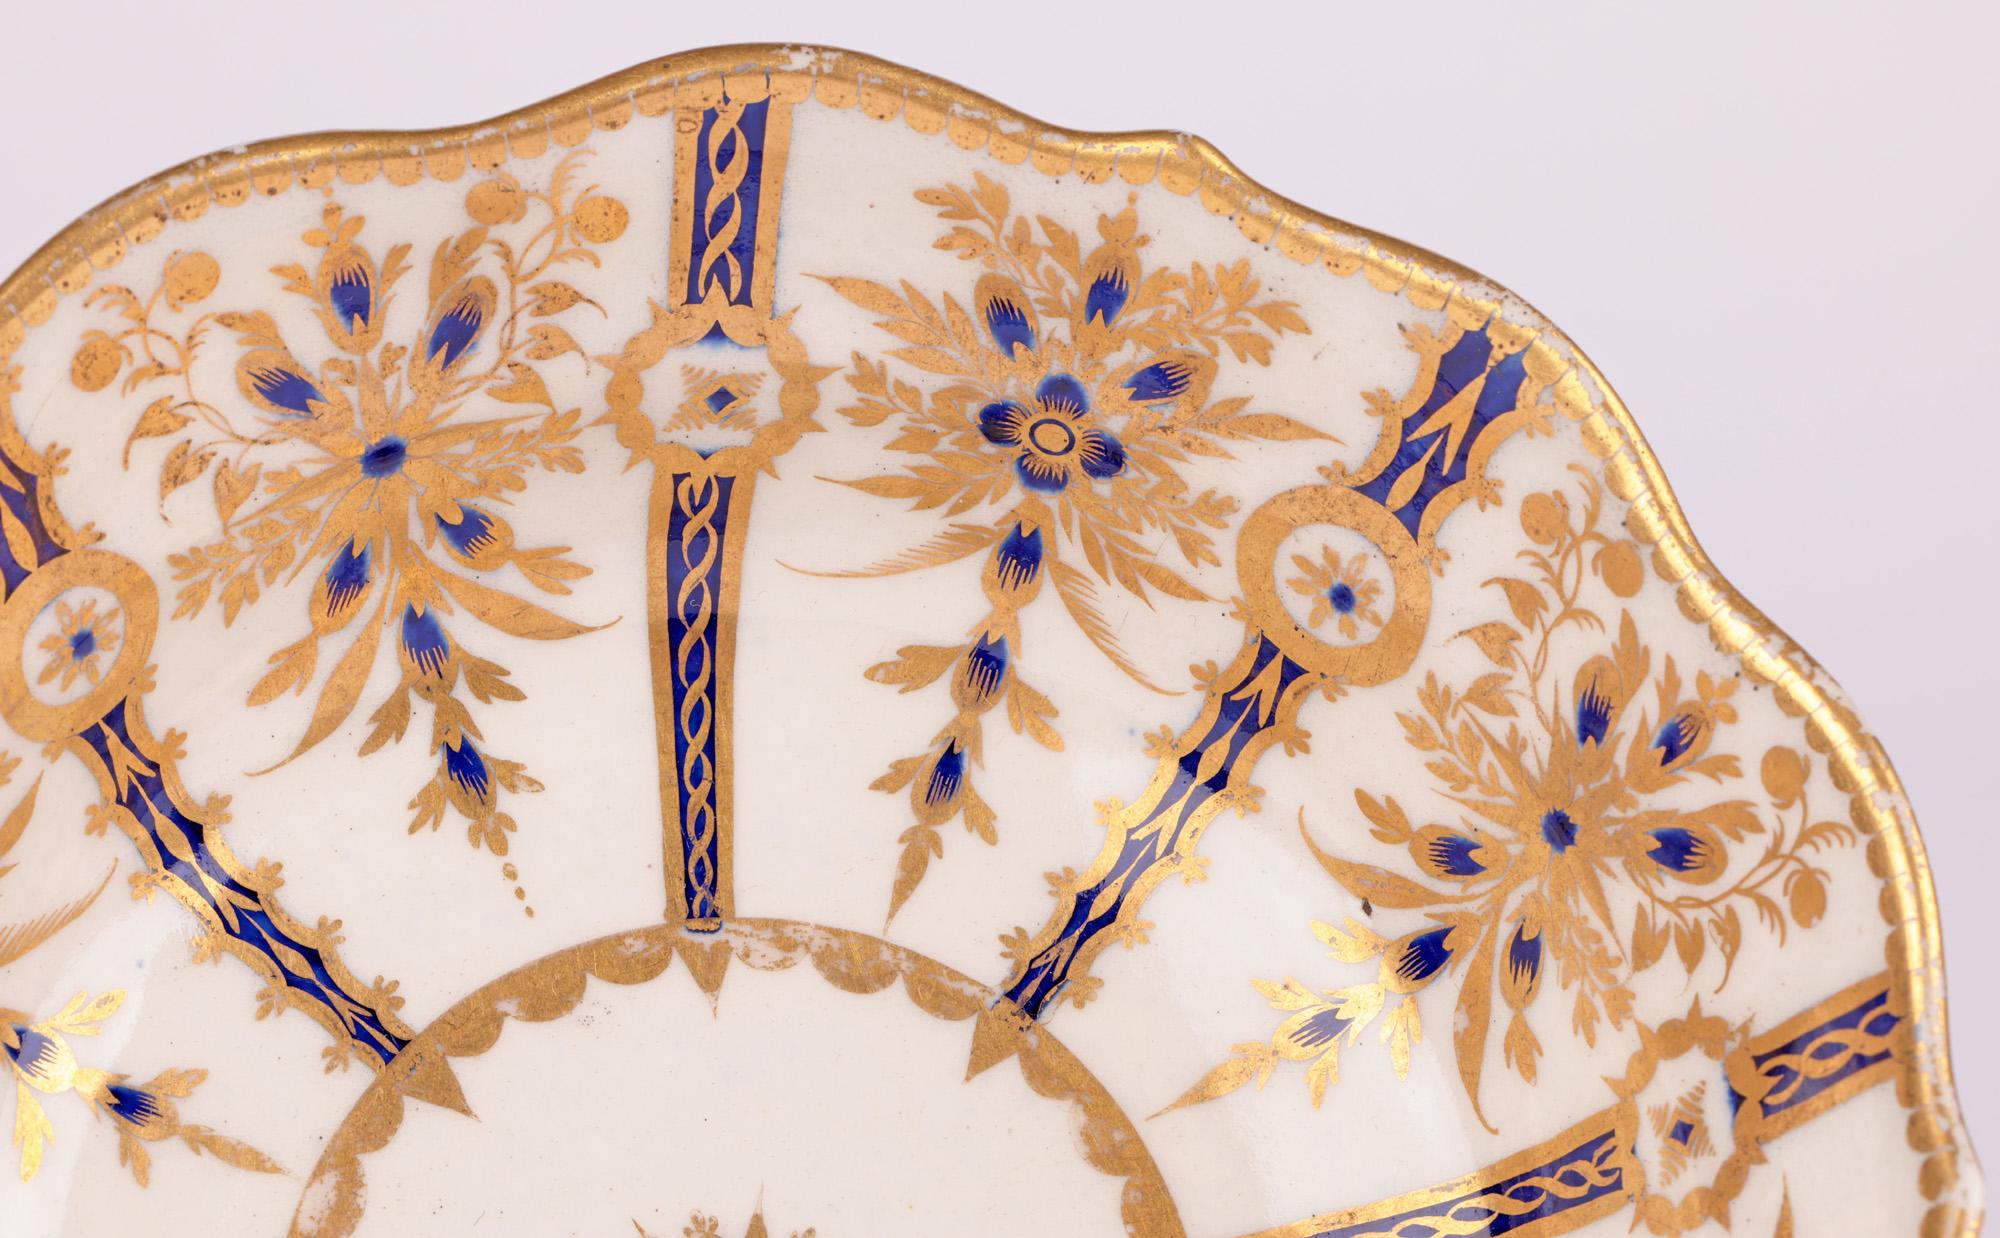 Très beau et inhabituel bol en porcelaine de la première ou de la quatrième période de Worcester, de forme moulée avec des motifs dorés et bleus finement appliqués, datant de 1751 à 1783. Le bol repose sur un large pied rond et profond avec une base